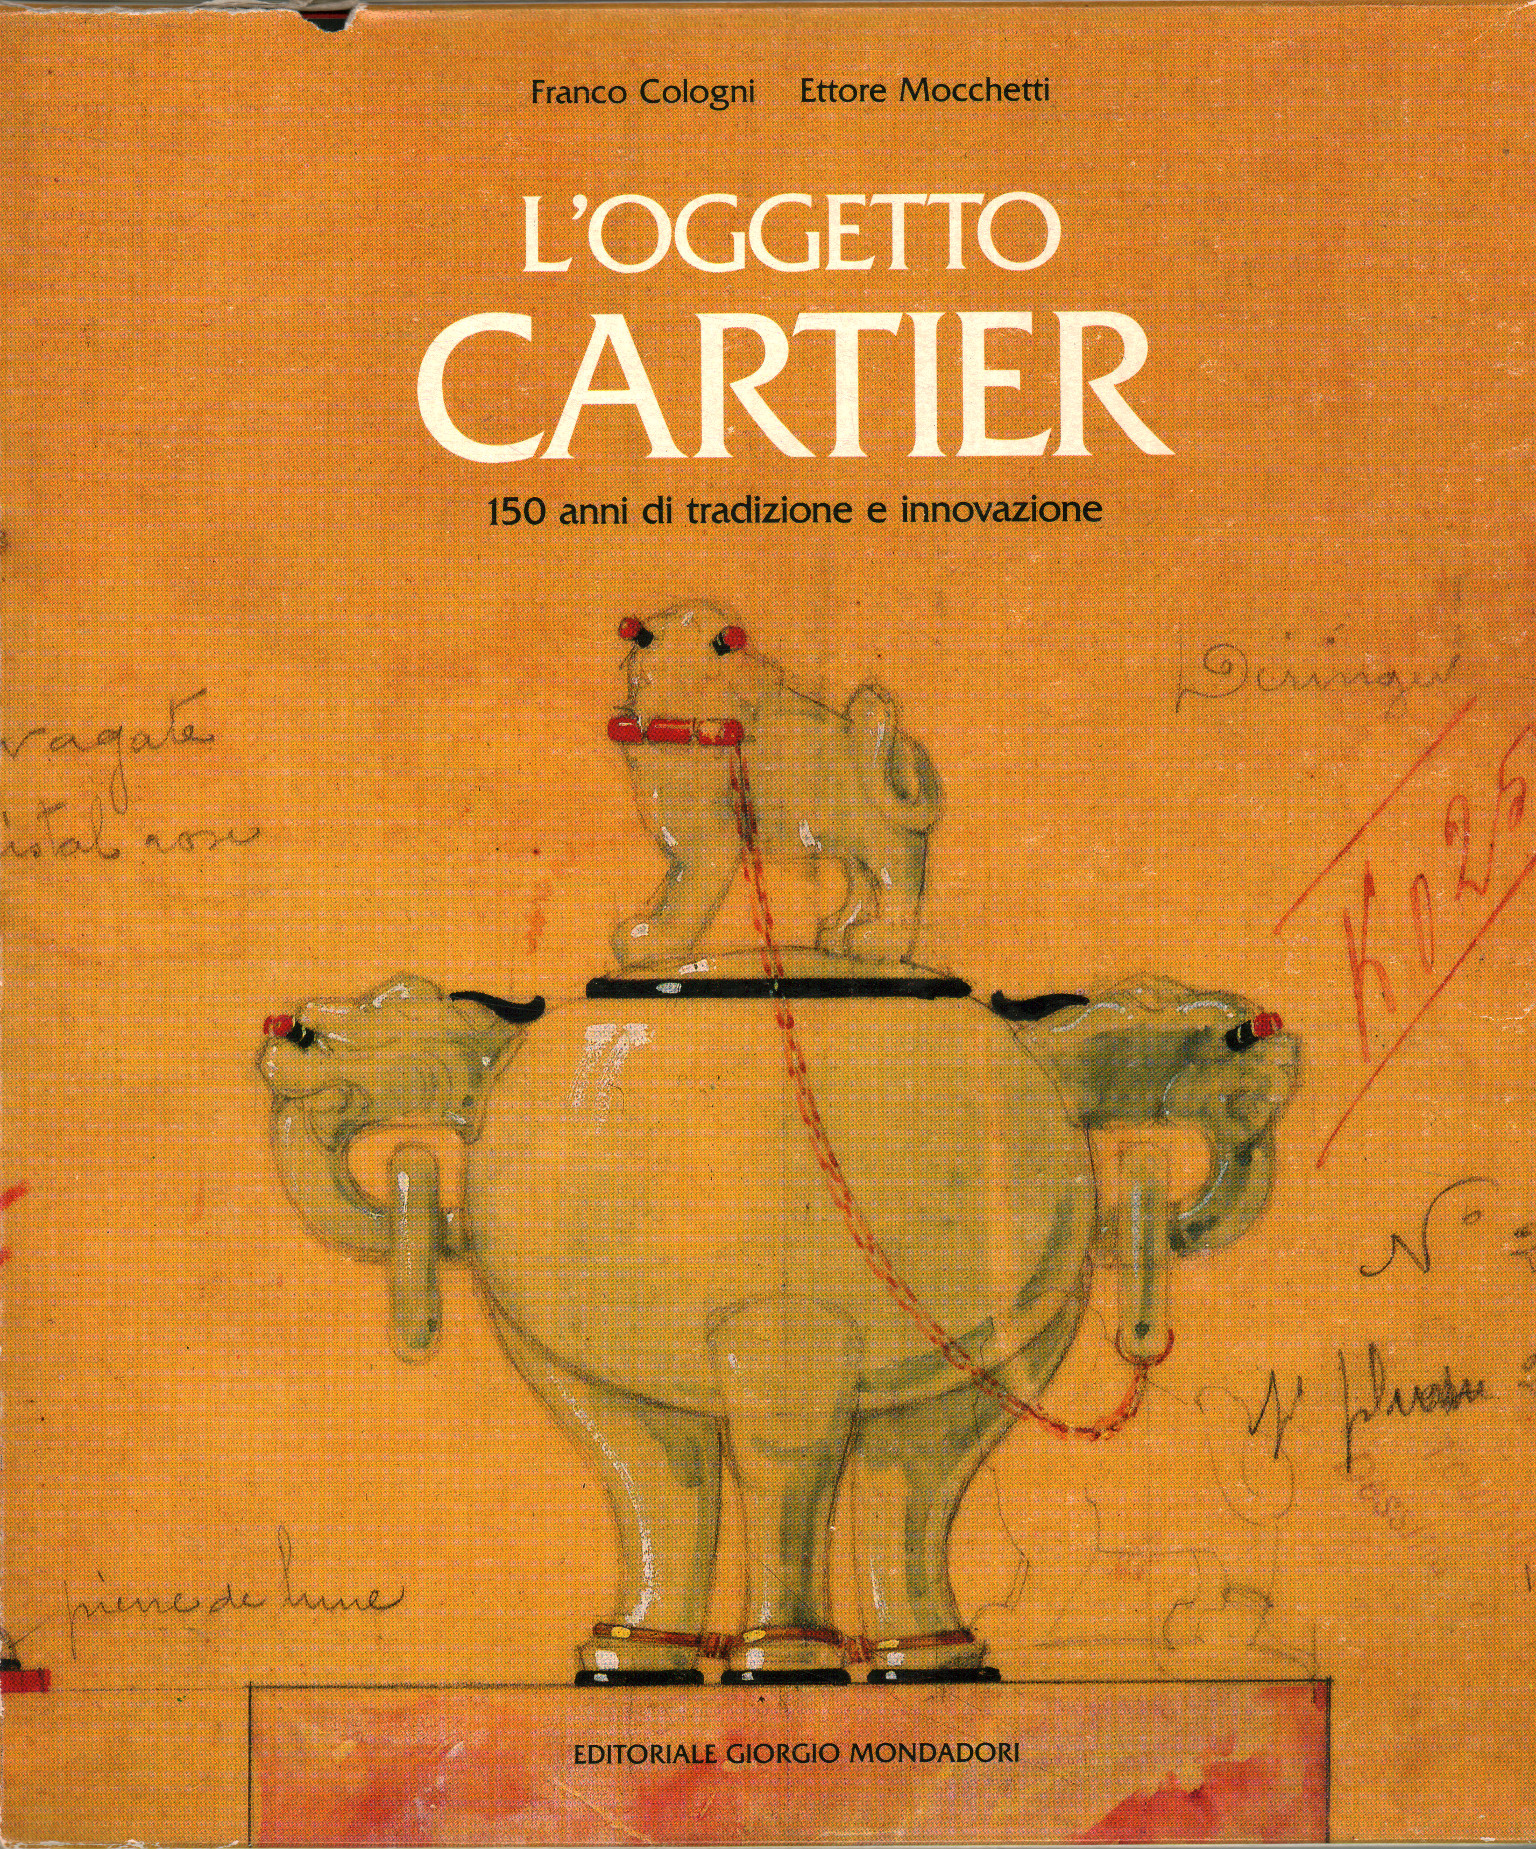 El objeto Cartier